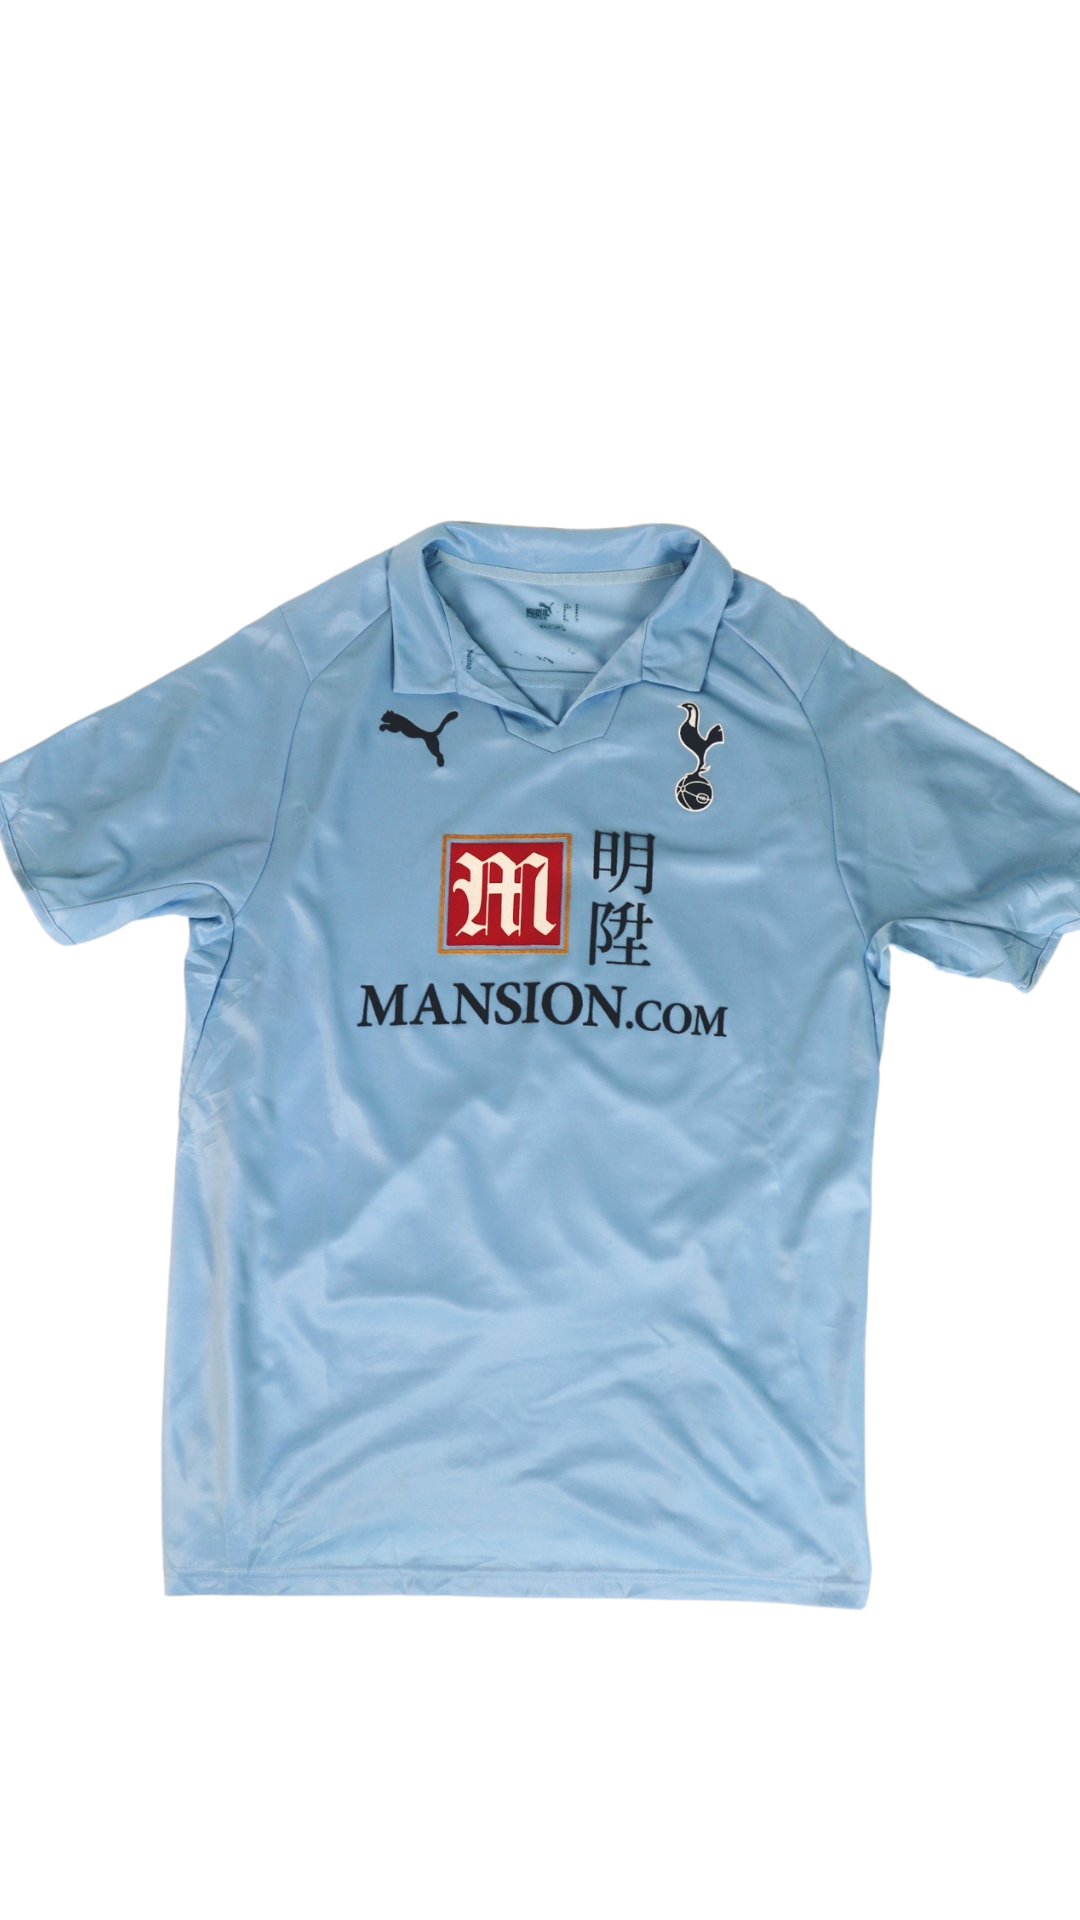 Tottenham Hotspur Away football shirt 2009 - 2010. Sponsored by